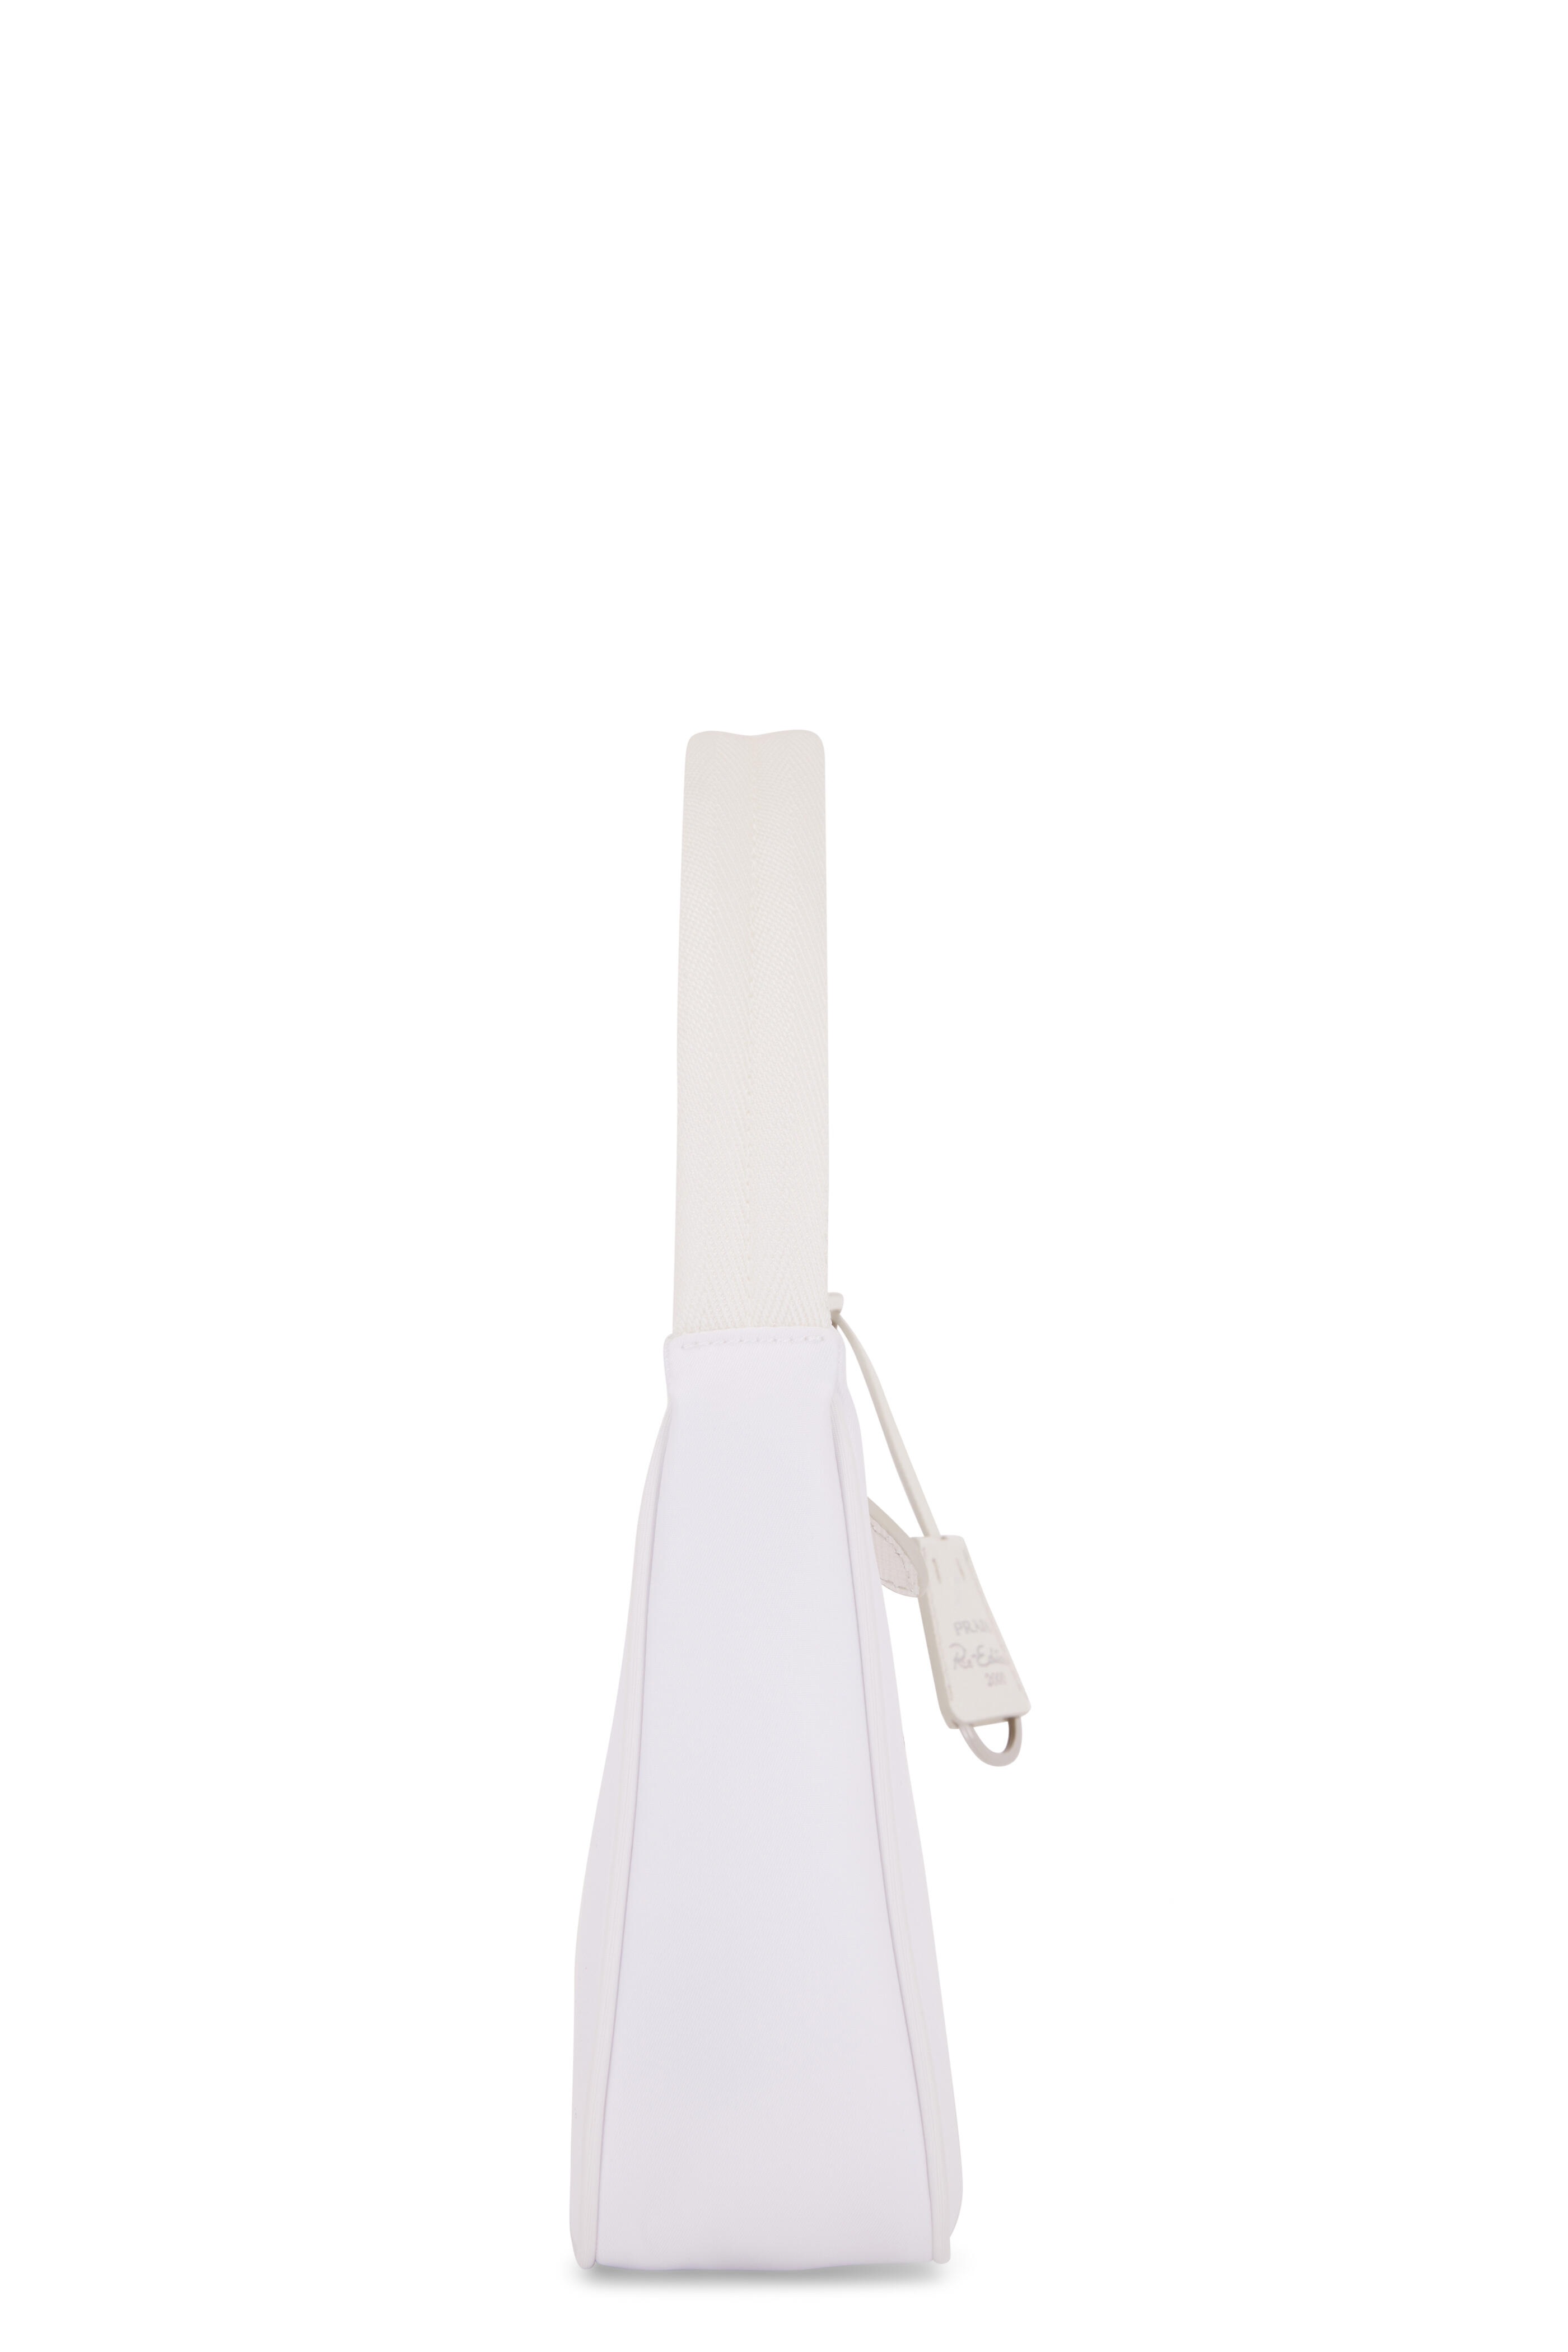 Prada Mini Boston Bag Shoulder Bag in White Leather ref.354612